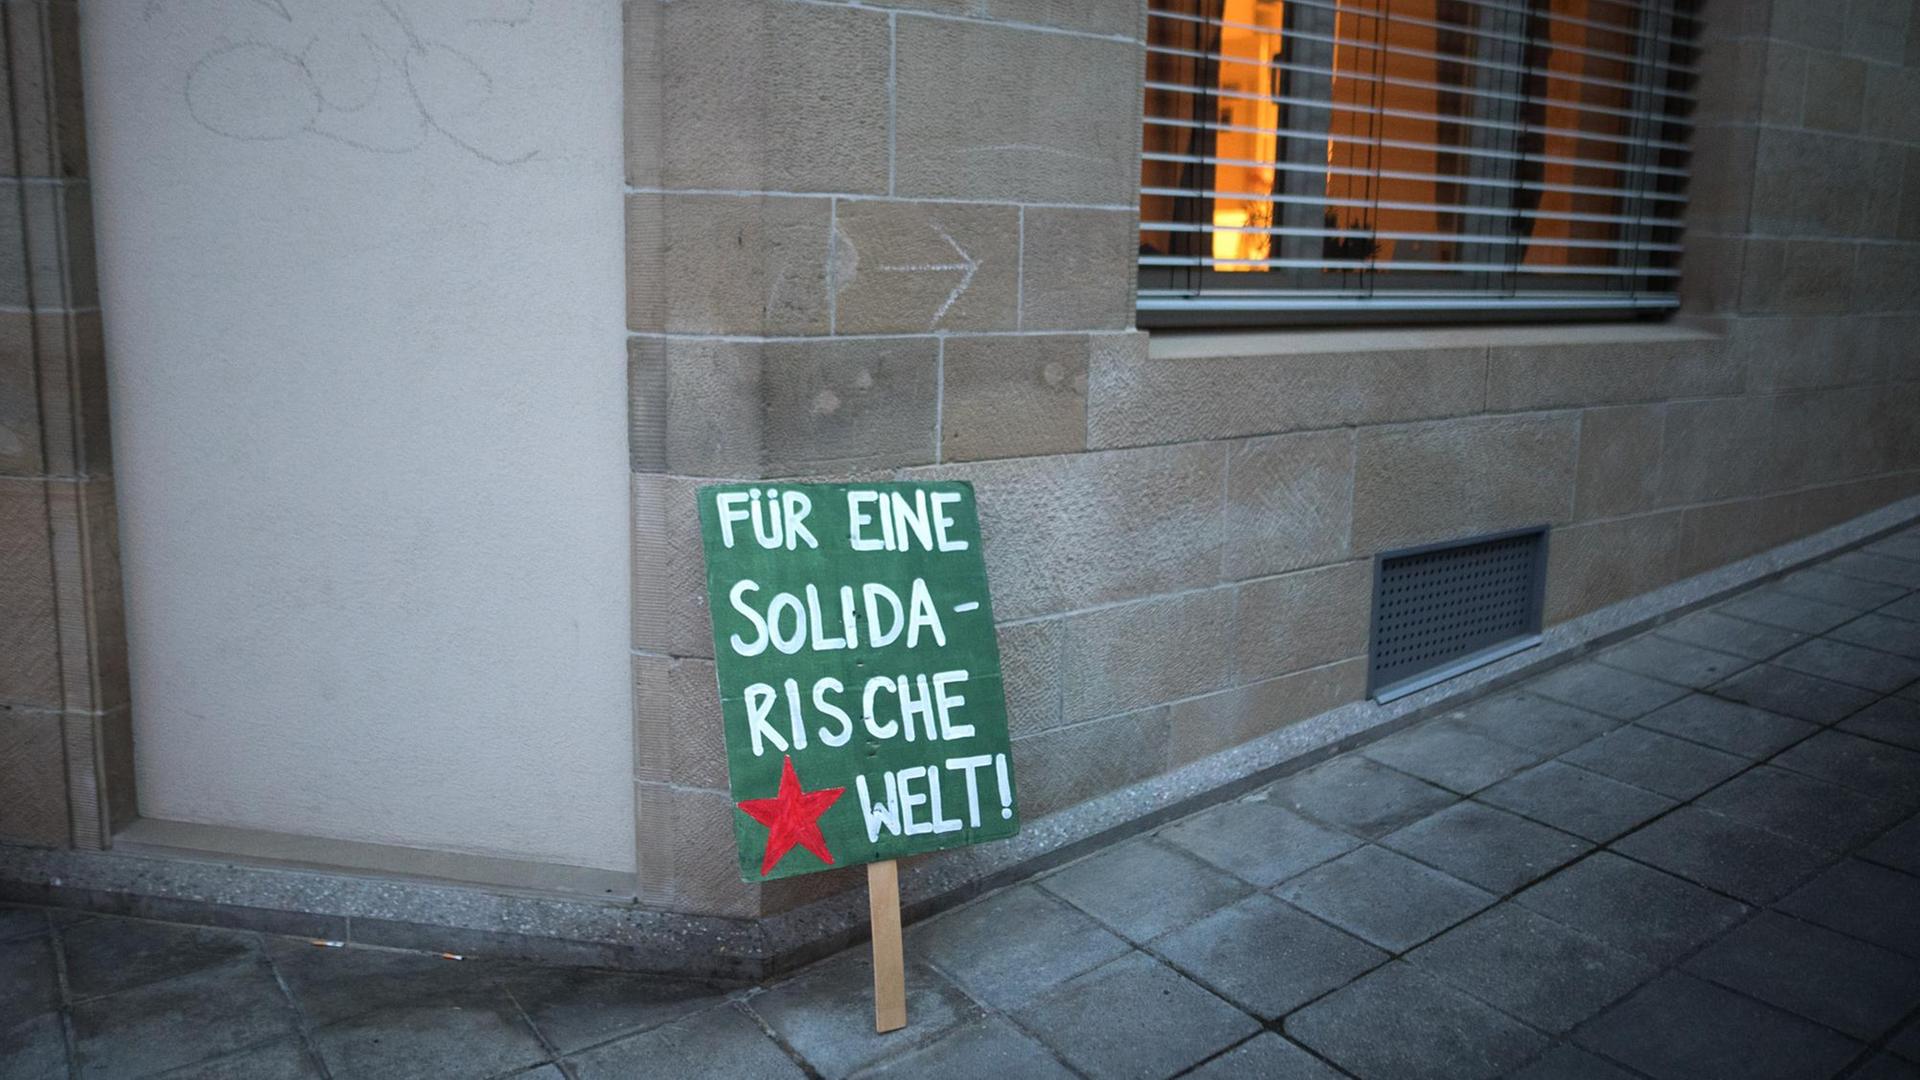 Ein Plakat mit der Aufschrift "Für eine solidarische Welt" steht nach einer Demonstration an eine Hauswand gelehnt.